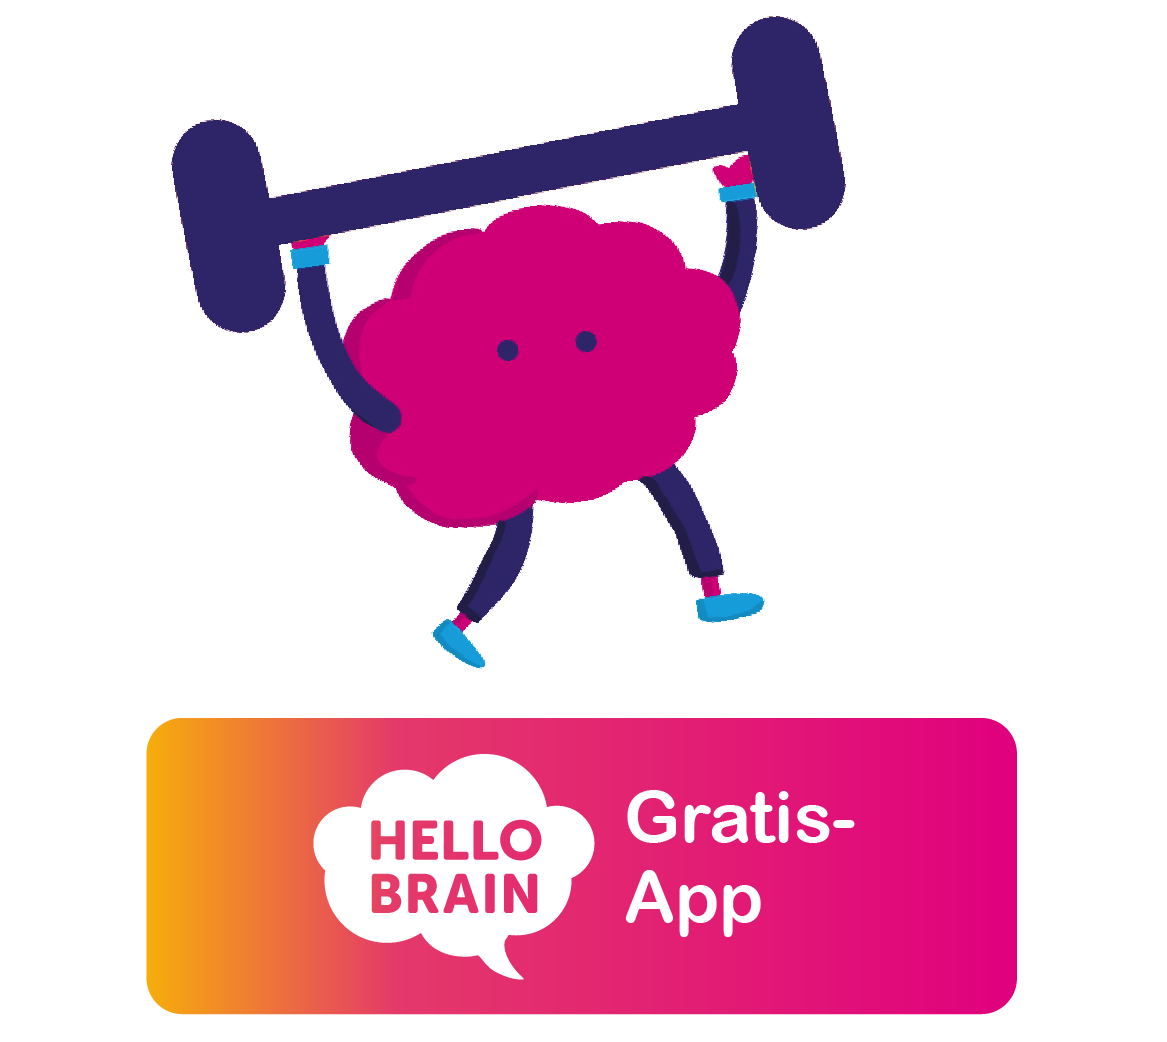 Hello Brain. Gratis-App.